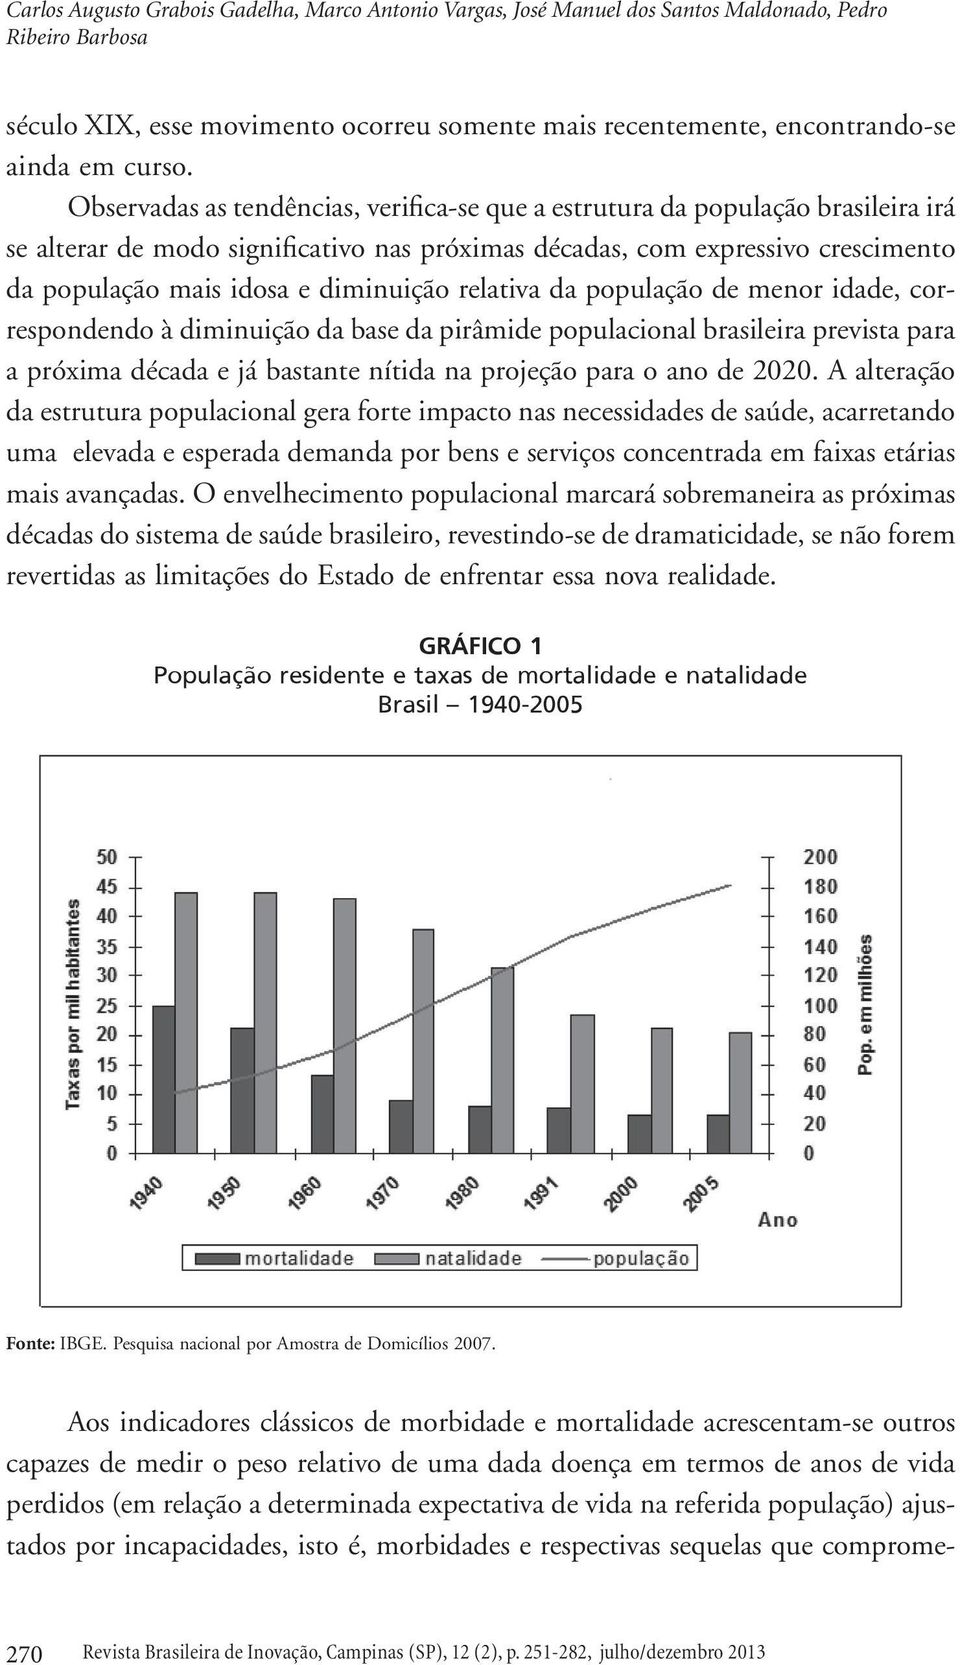 Observadas as tendências, verifica-se que a estrutura da população brasileira irá se alterar de modo significativo nas próximas décadas, com expressivo crescimento da população mais idosa e